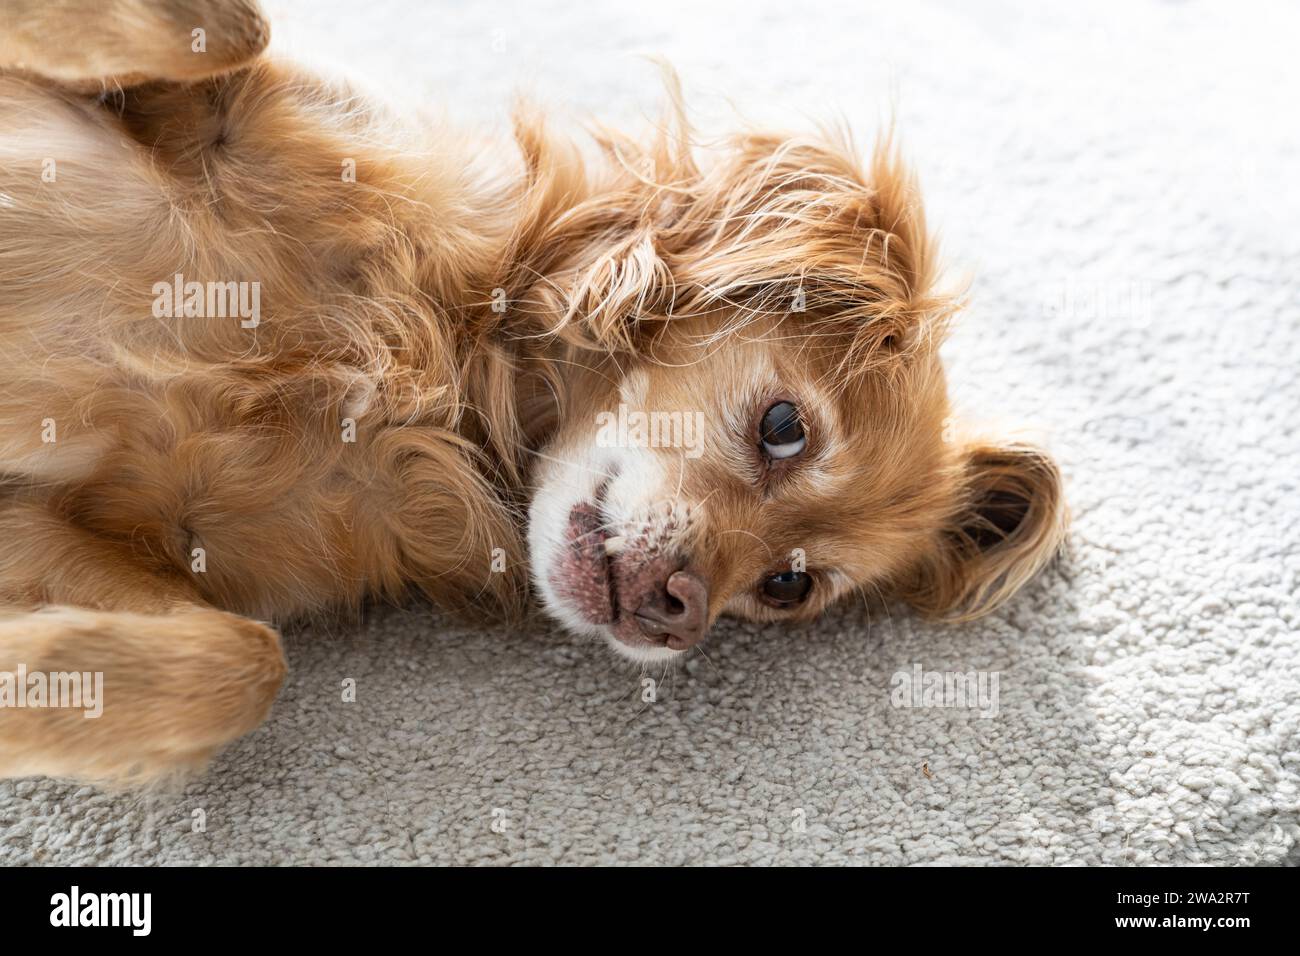 Un cane marrone Spaniel Mongrel giace su un tappeto bianco in un soggiorno e guarda in alto Foto Stock